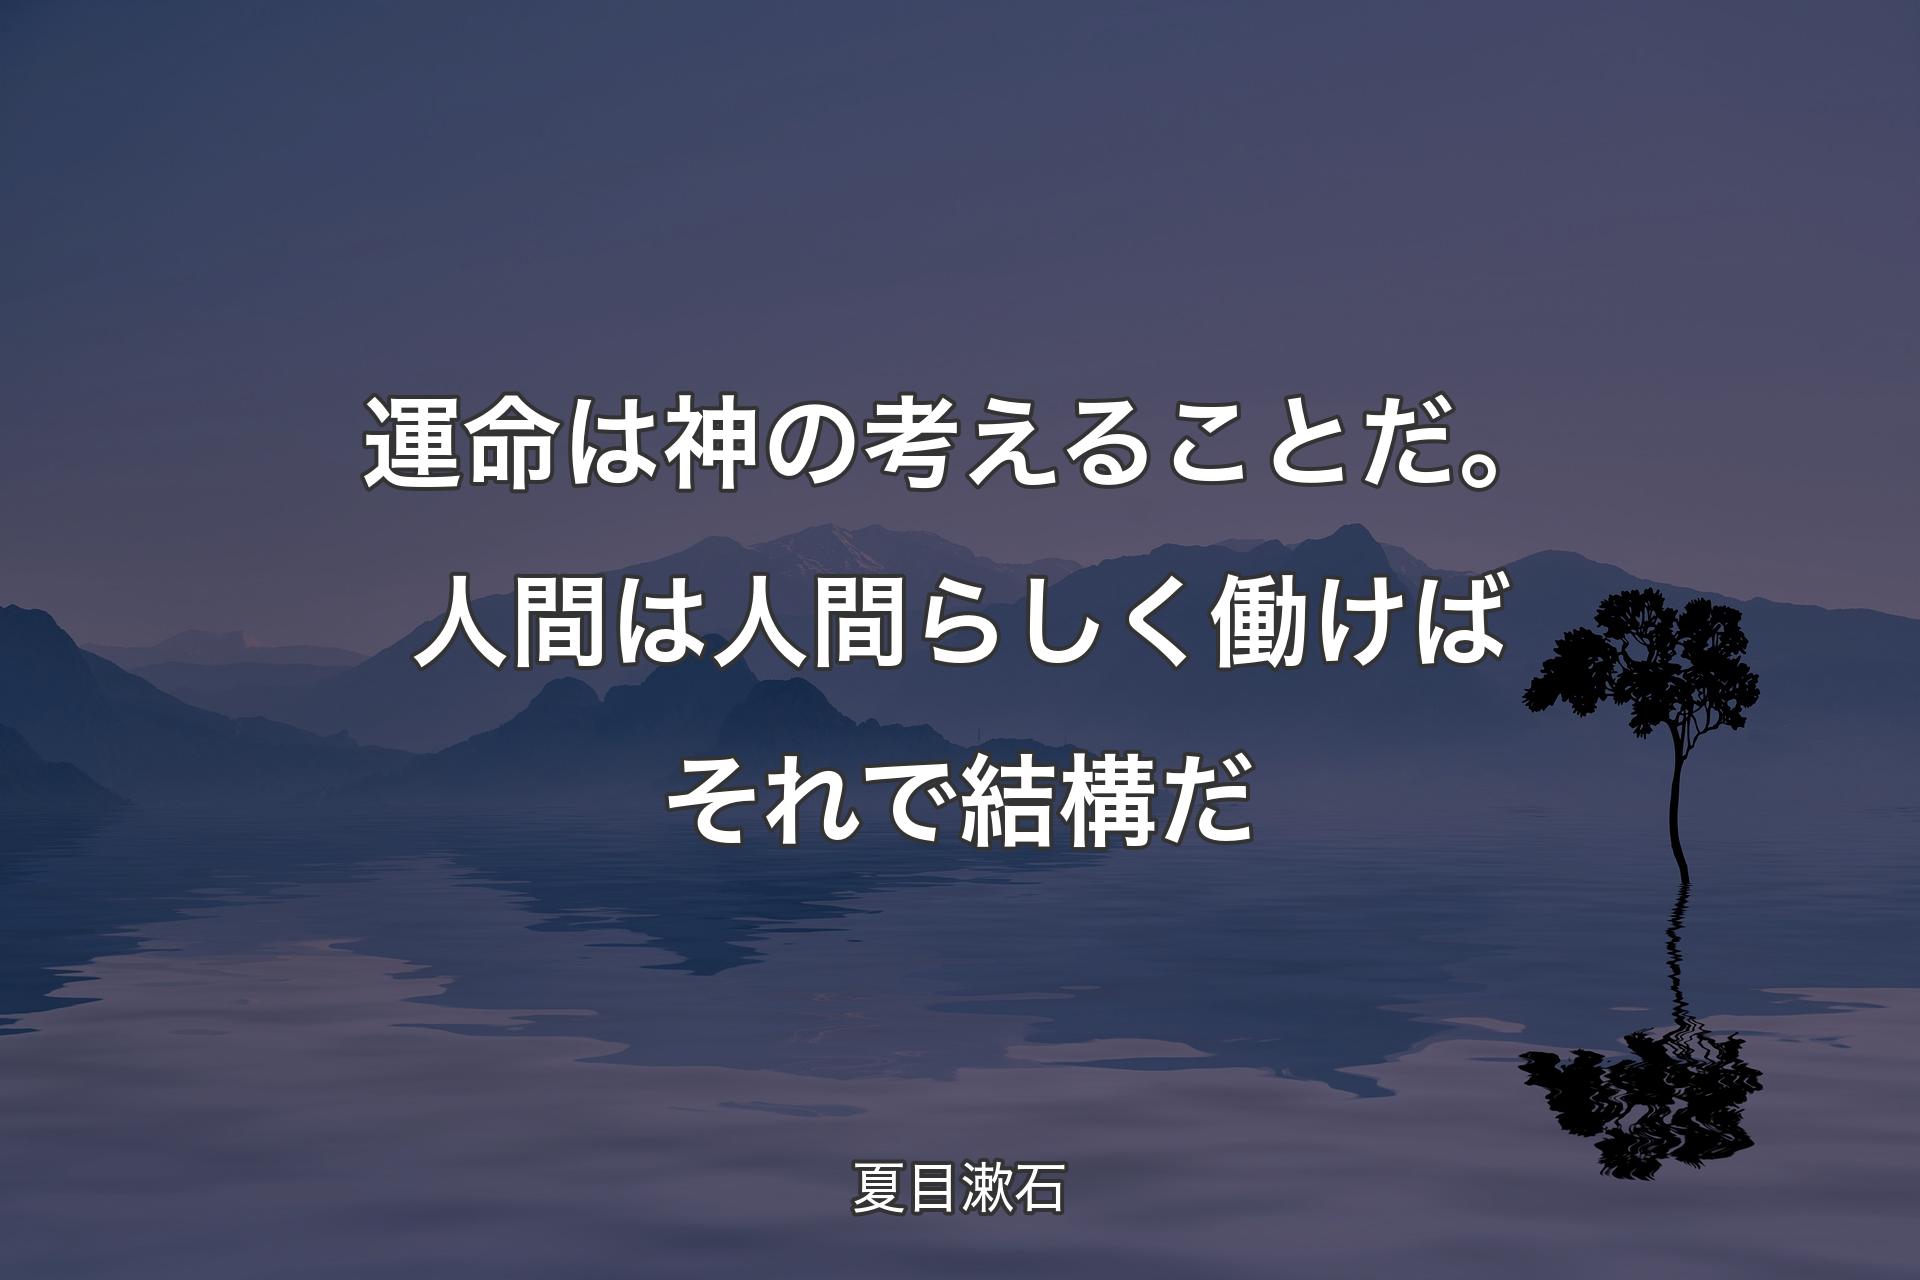 運命は神の考えることだ。 人間は人間らしく働けば そ�れで結構だ - 夏目漱石